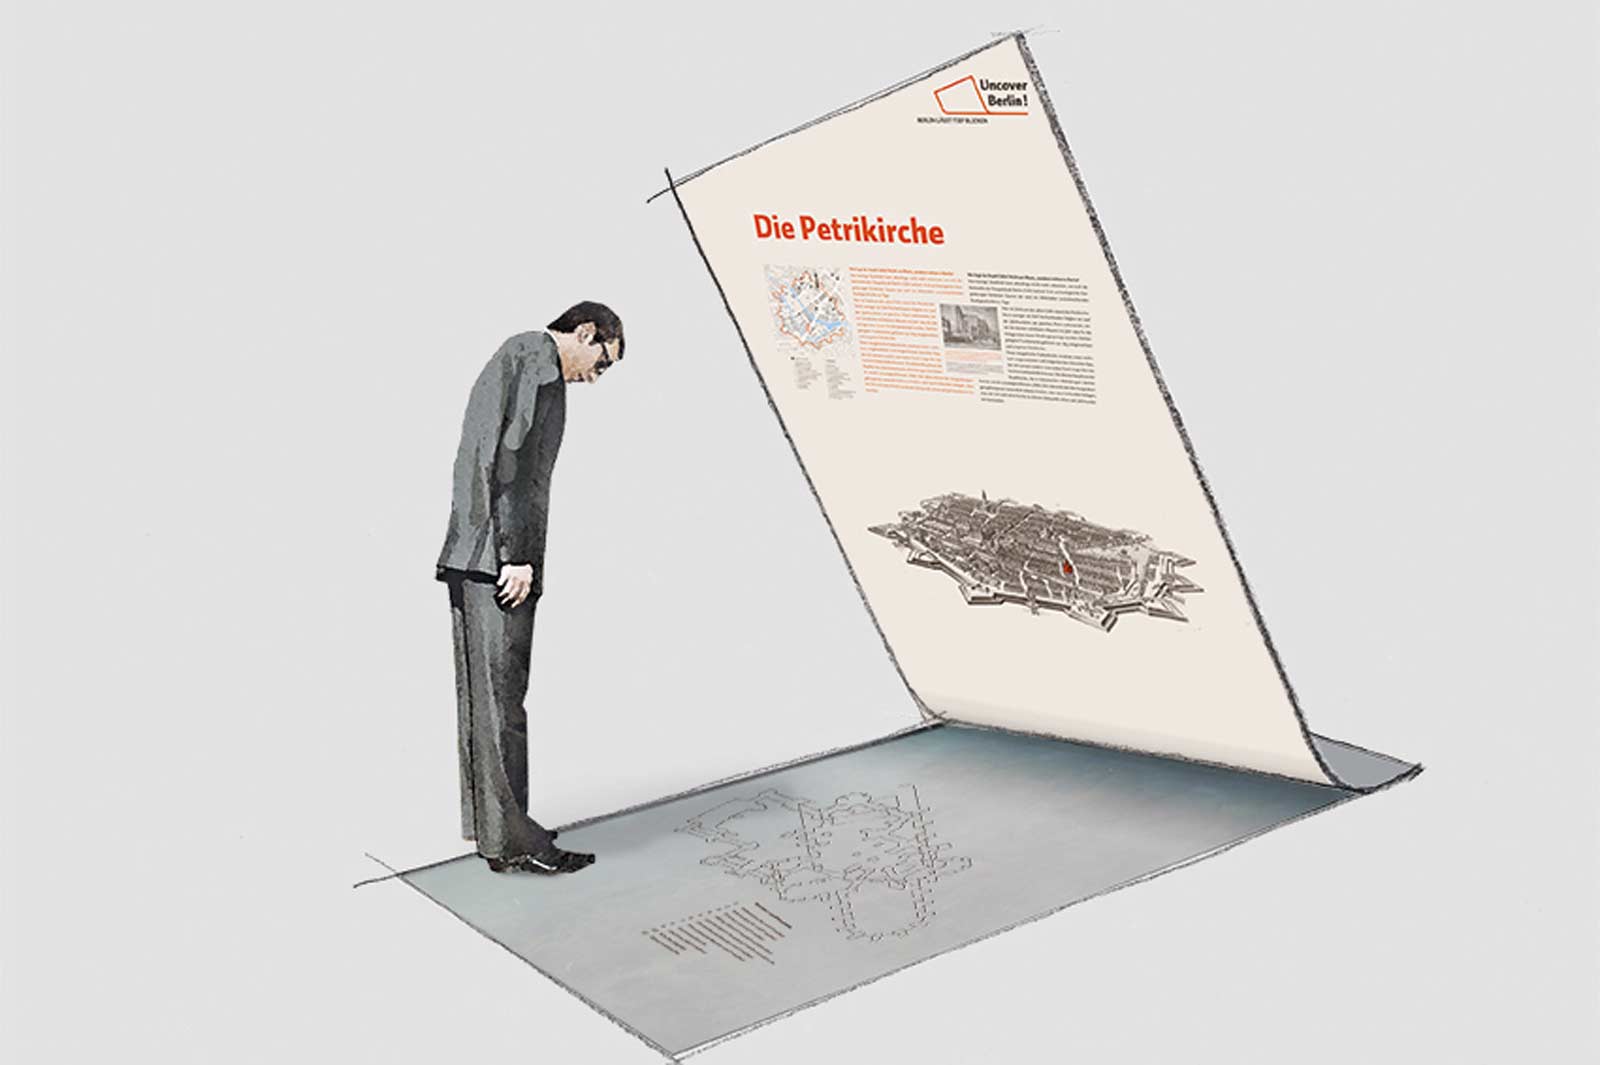 Das Referenzbild für Ausstellungsgestaltung aus der Ausstellung im Stadtraum „Uncover Berlin“ zeigt die Visualisierung einer Infografik.